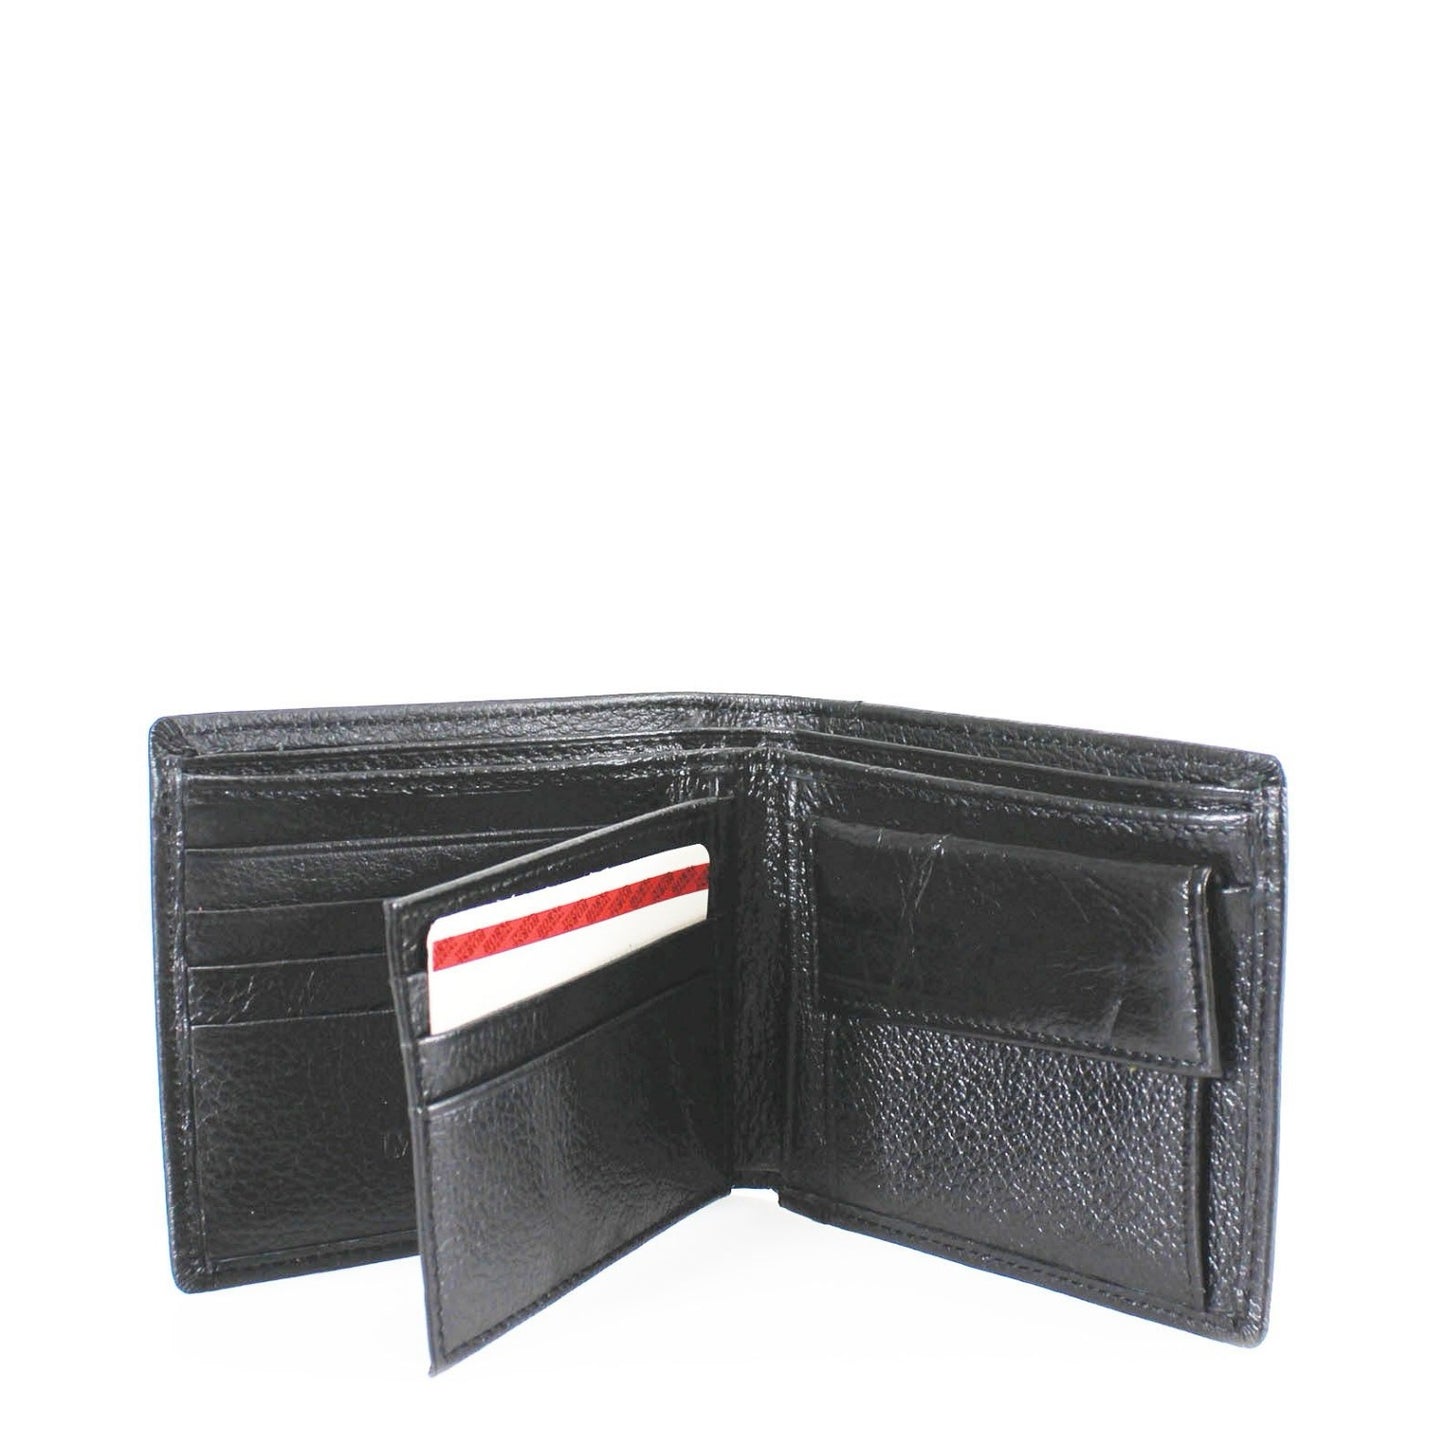 HUNTER - Men's Black Leather Wallet